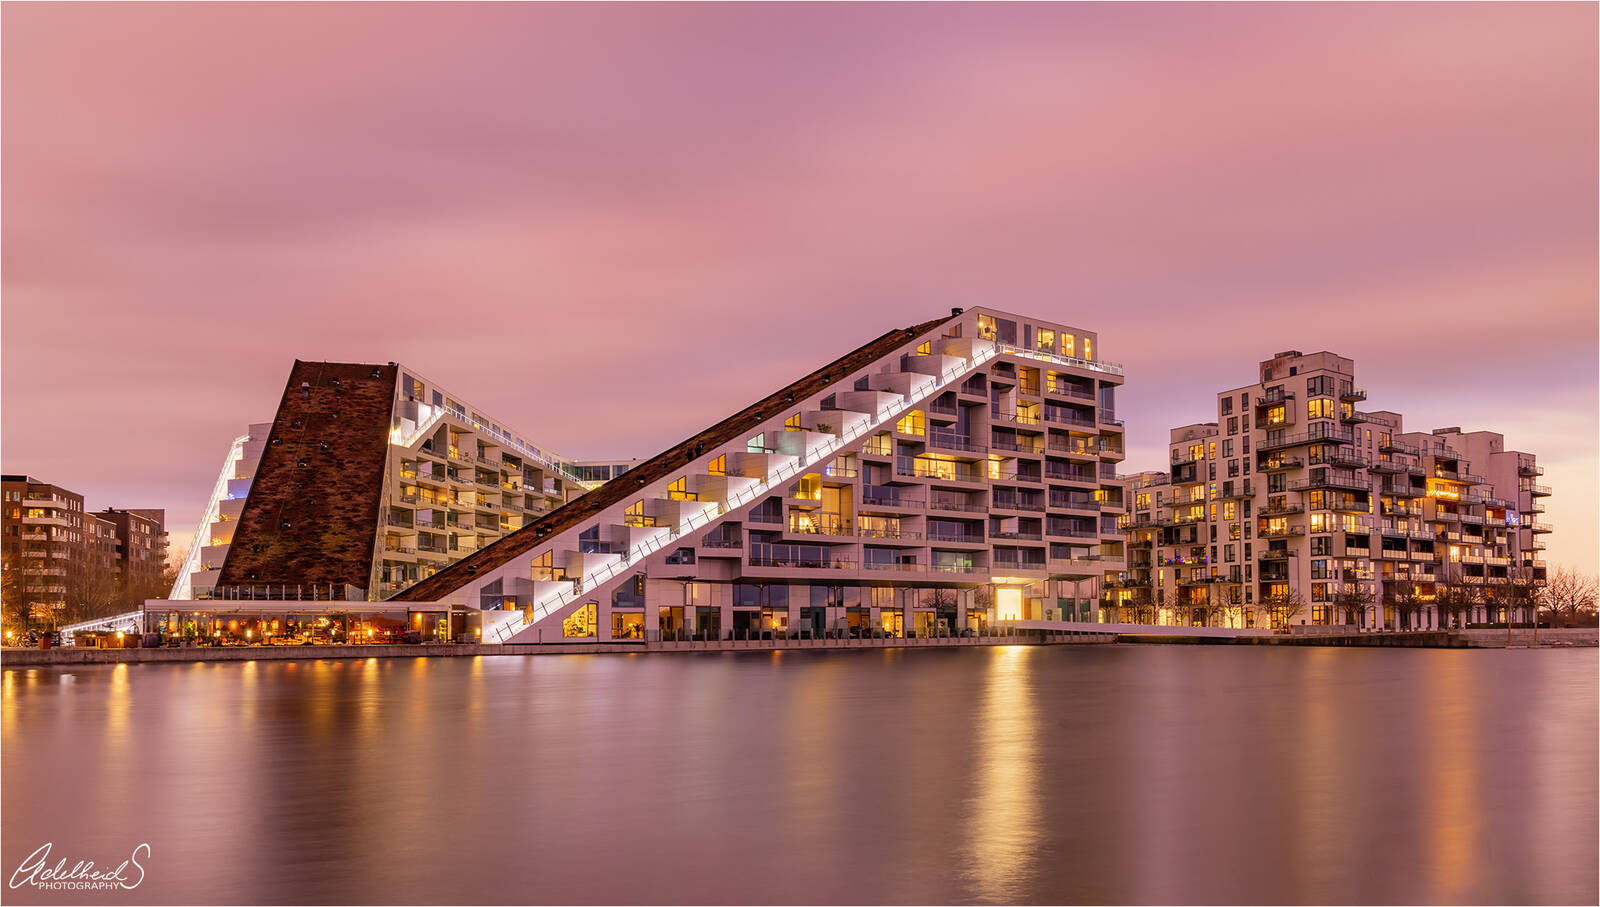 Image of 8tallet (8House) Residential Area Copenhagen by Adelheid Smitt